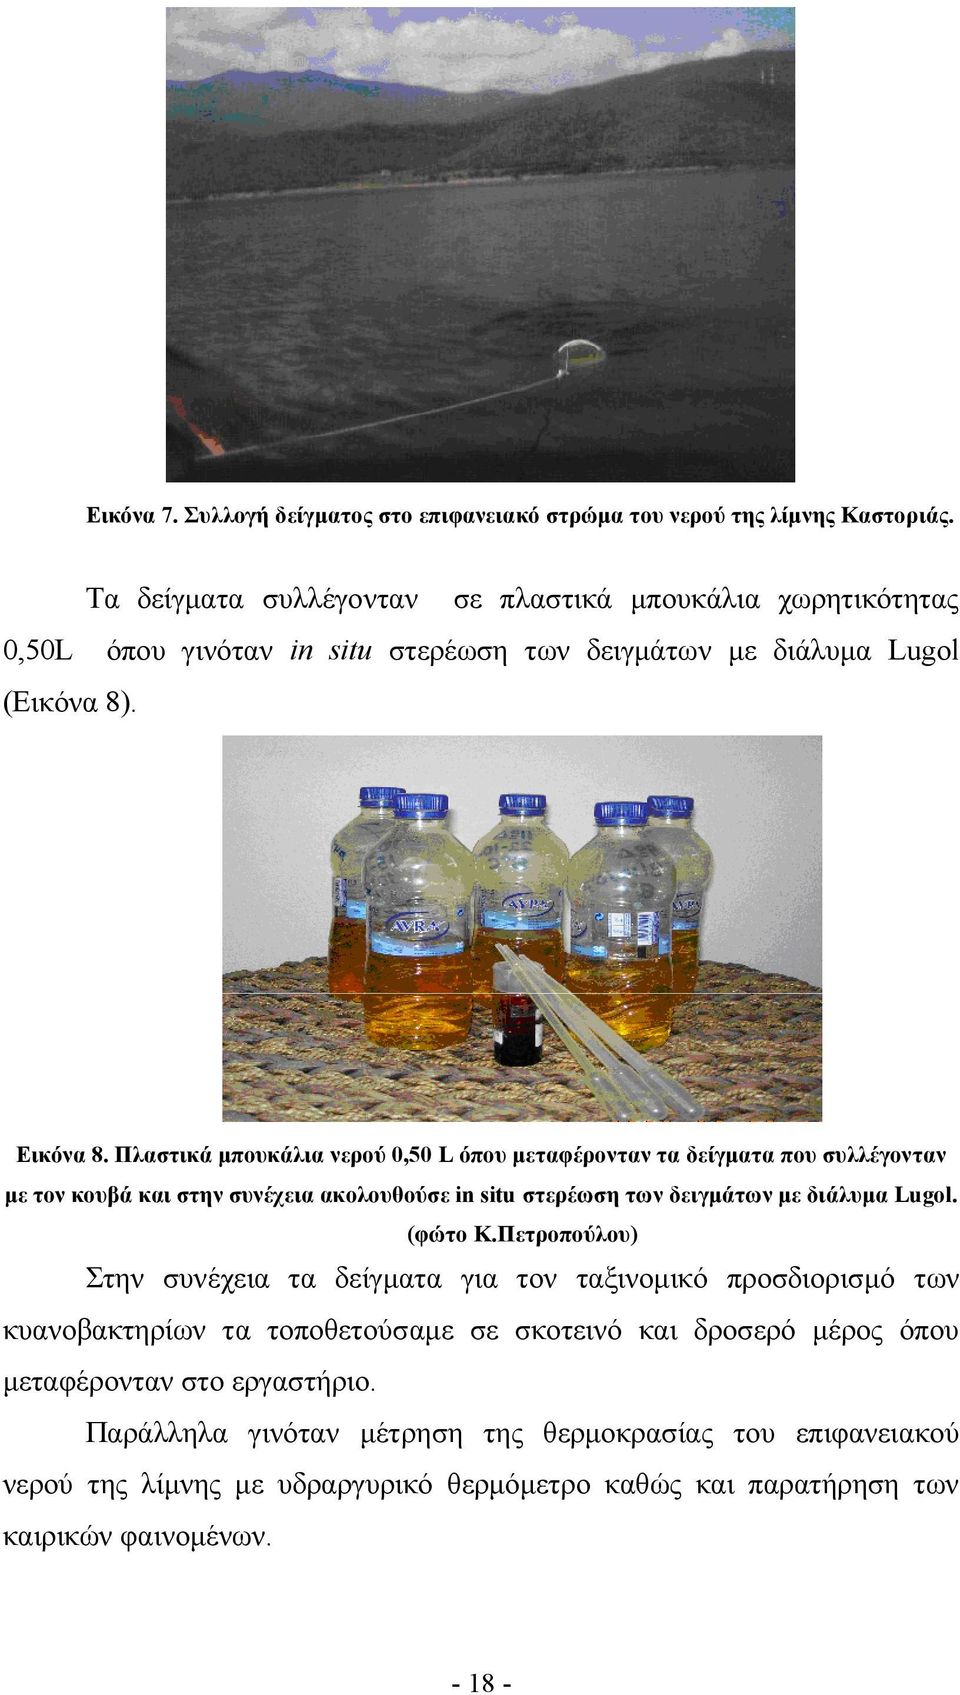 Πλαστικά μπουκάλια νερού 0,50 L όπου μεταφέρονταν τα δείγματα που συλλέγονταν με τον κουβά και στην συνέχεια ακολουθούσε in situ στερέωση των δειγμάτων με διάλυμα Lugol. (φώτο Κ.